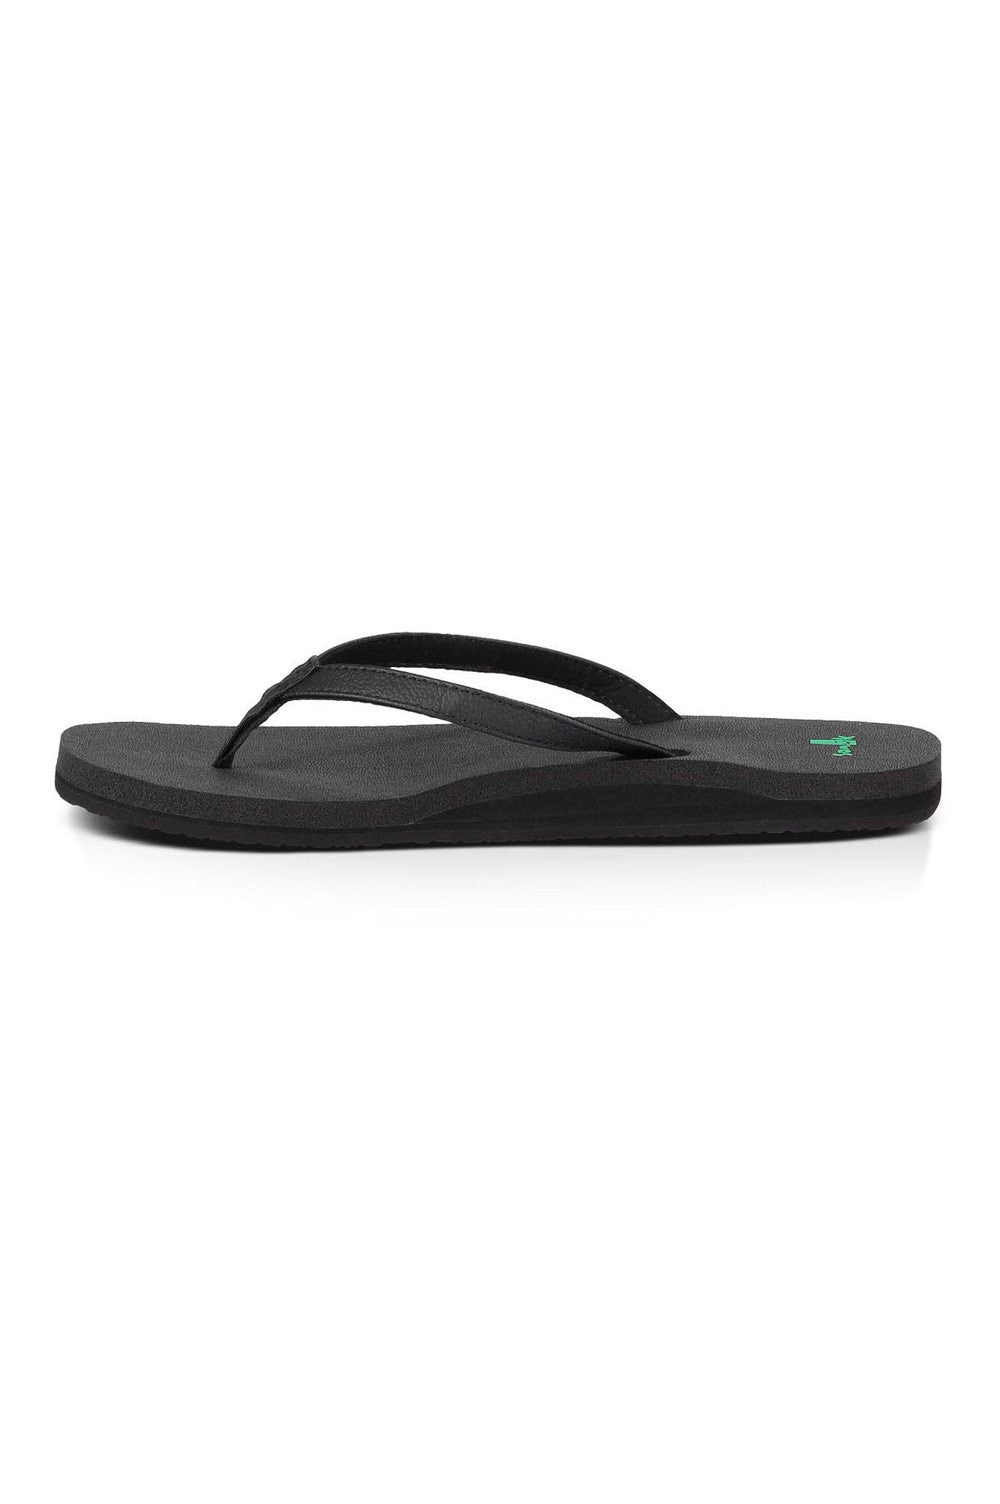 Sanuk Yoga Mat Yoga Joy Sandals– Mainland Skate & Surf